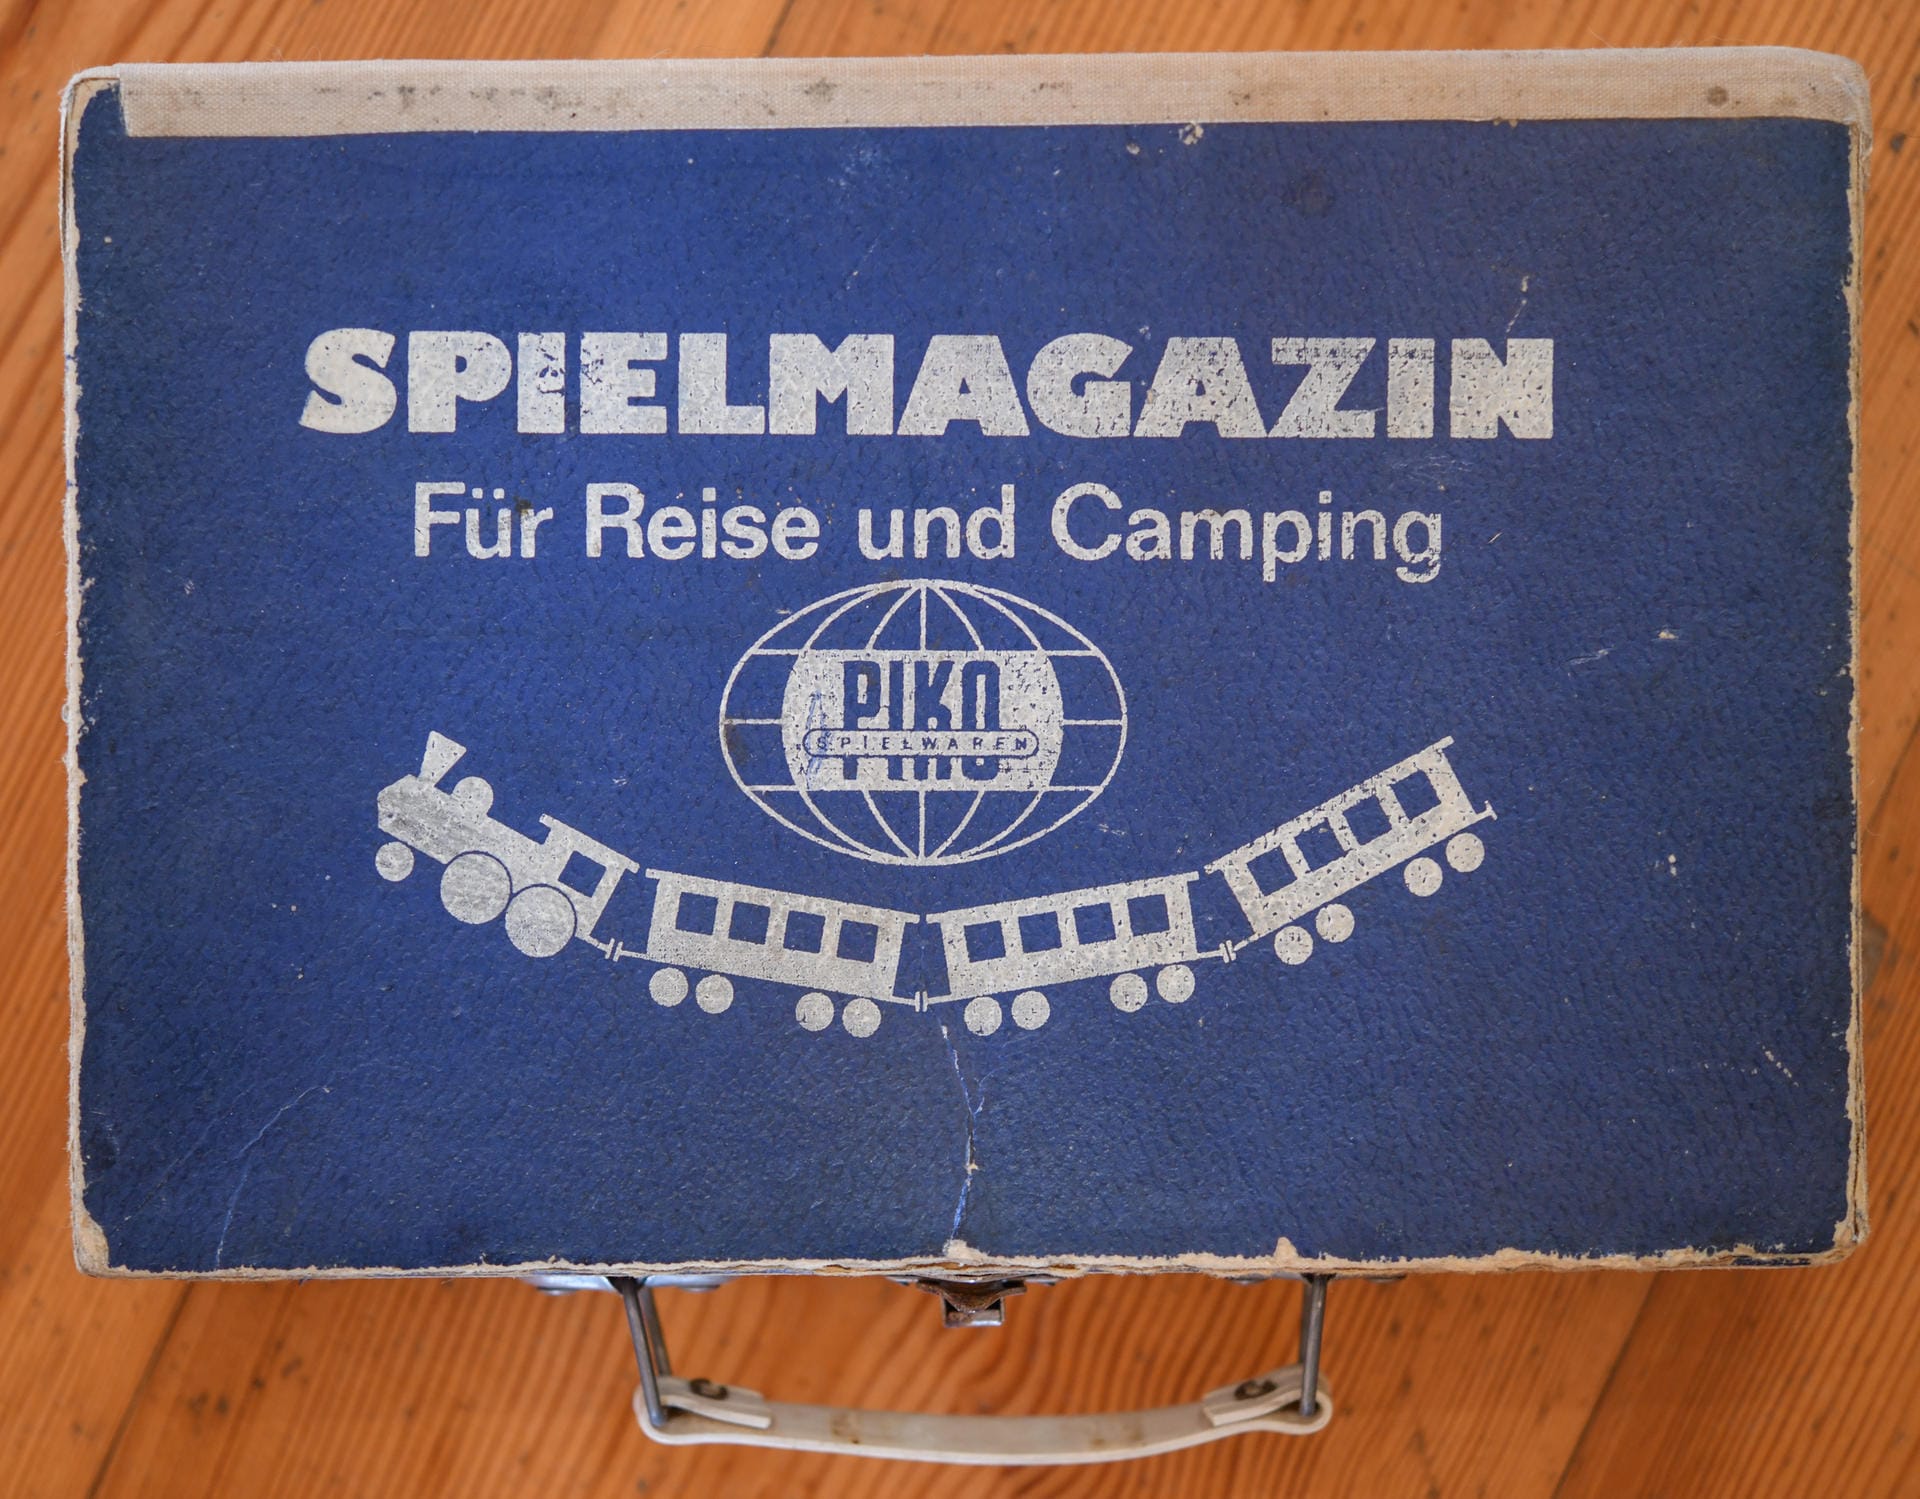 Ein kleiner Koffer mit der Aufschrift "Spielemagazin für Reise und Camping PIKO Spielwaren" aus DDR-Zeiten ist in der Ausstellung zu sehen.